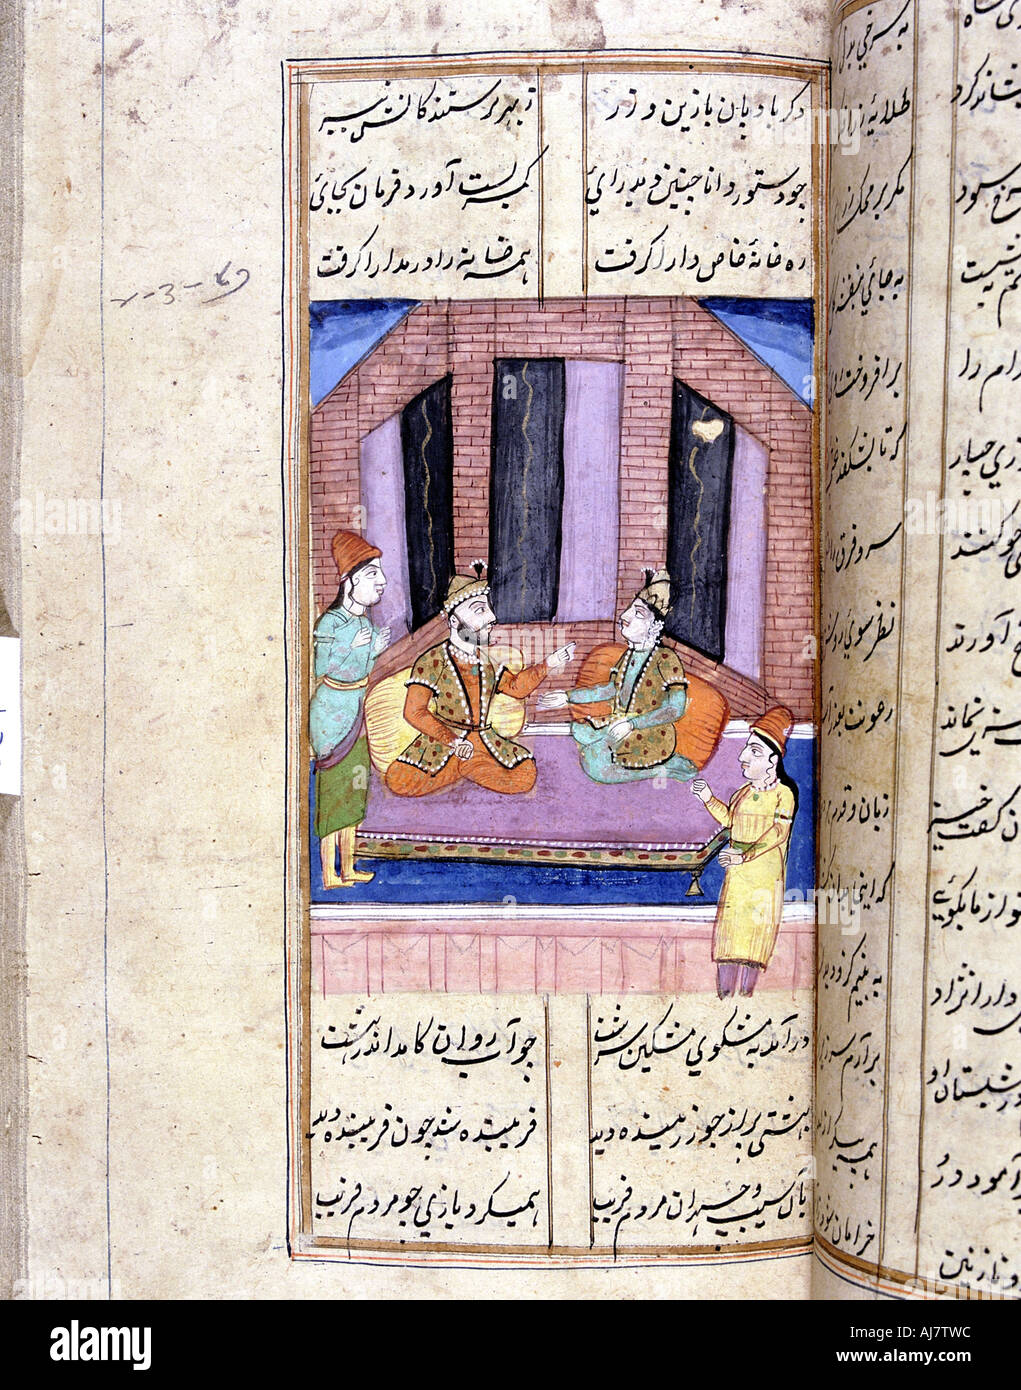 Nezami, poète persan, relatant l'histoire d'Alexandre le Grand, 12e siècle (18e siècle). Artiste : Inconnu Banque D'Images